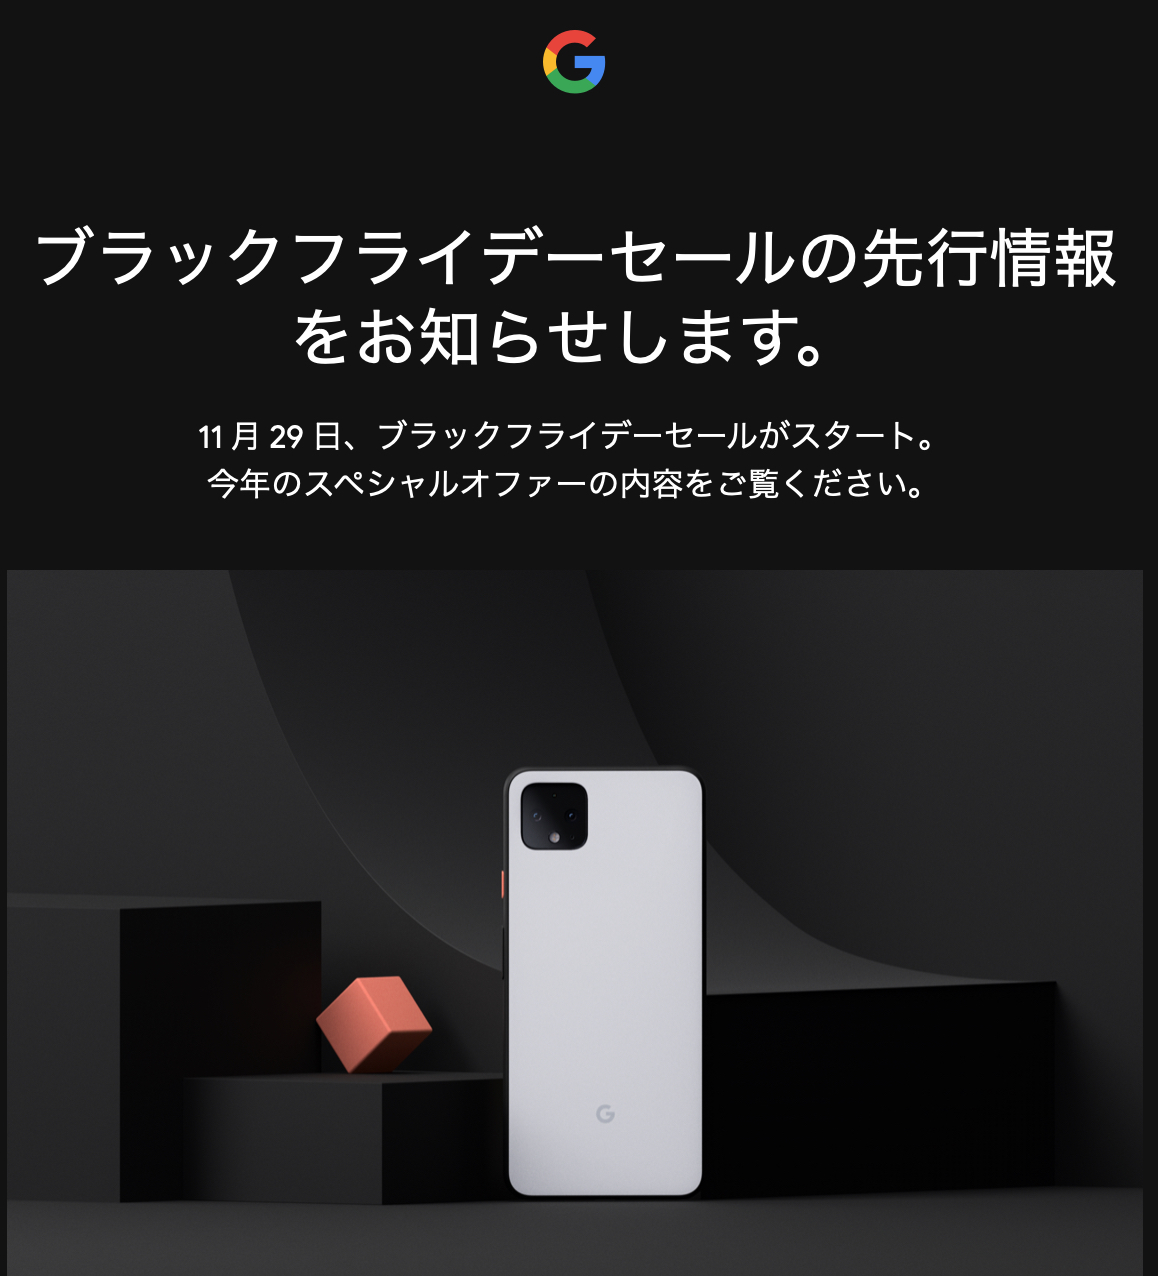 Google ストア「ブラックフライデーセール」16,000円分の特典、Google Home Miniプレゼント